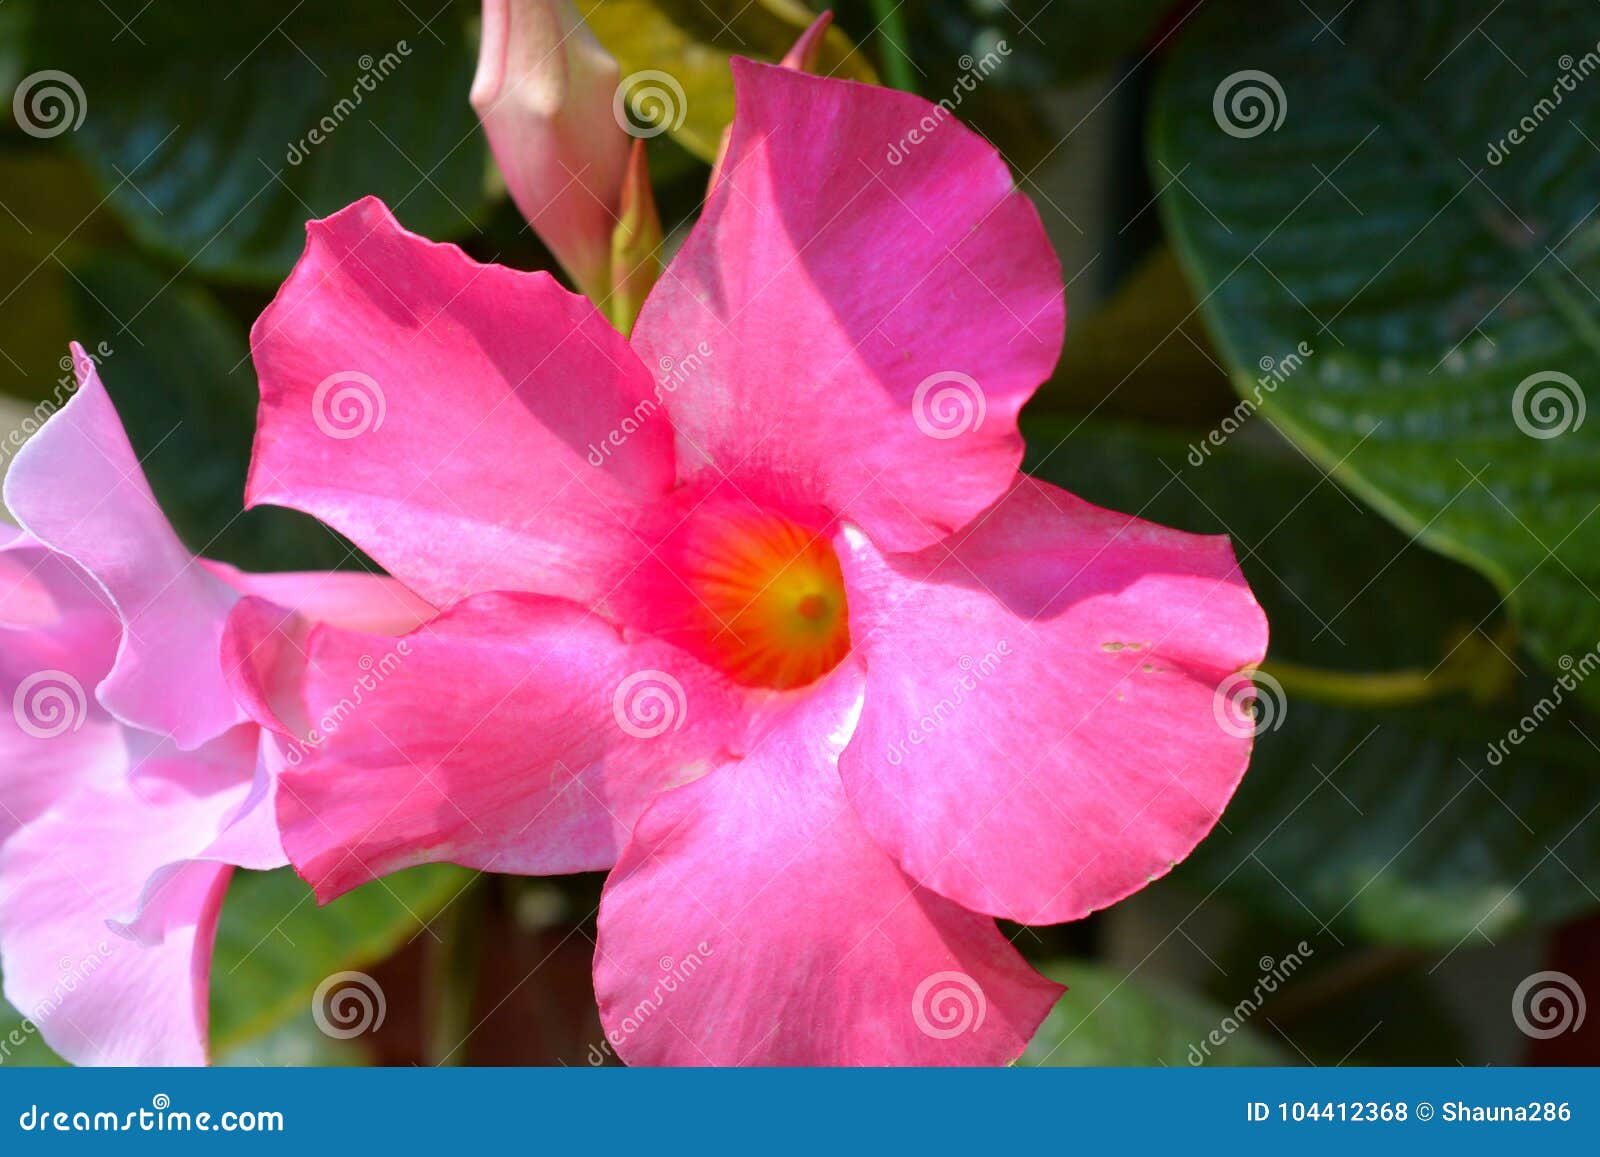 Fleur Rose Tropicale De Ketmie En Pleine Floraison Photo stock - Image du  couleur, jardin: 104412368